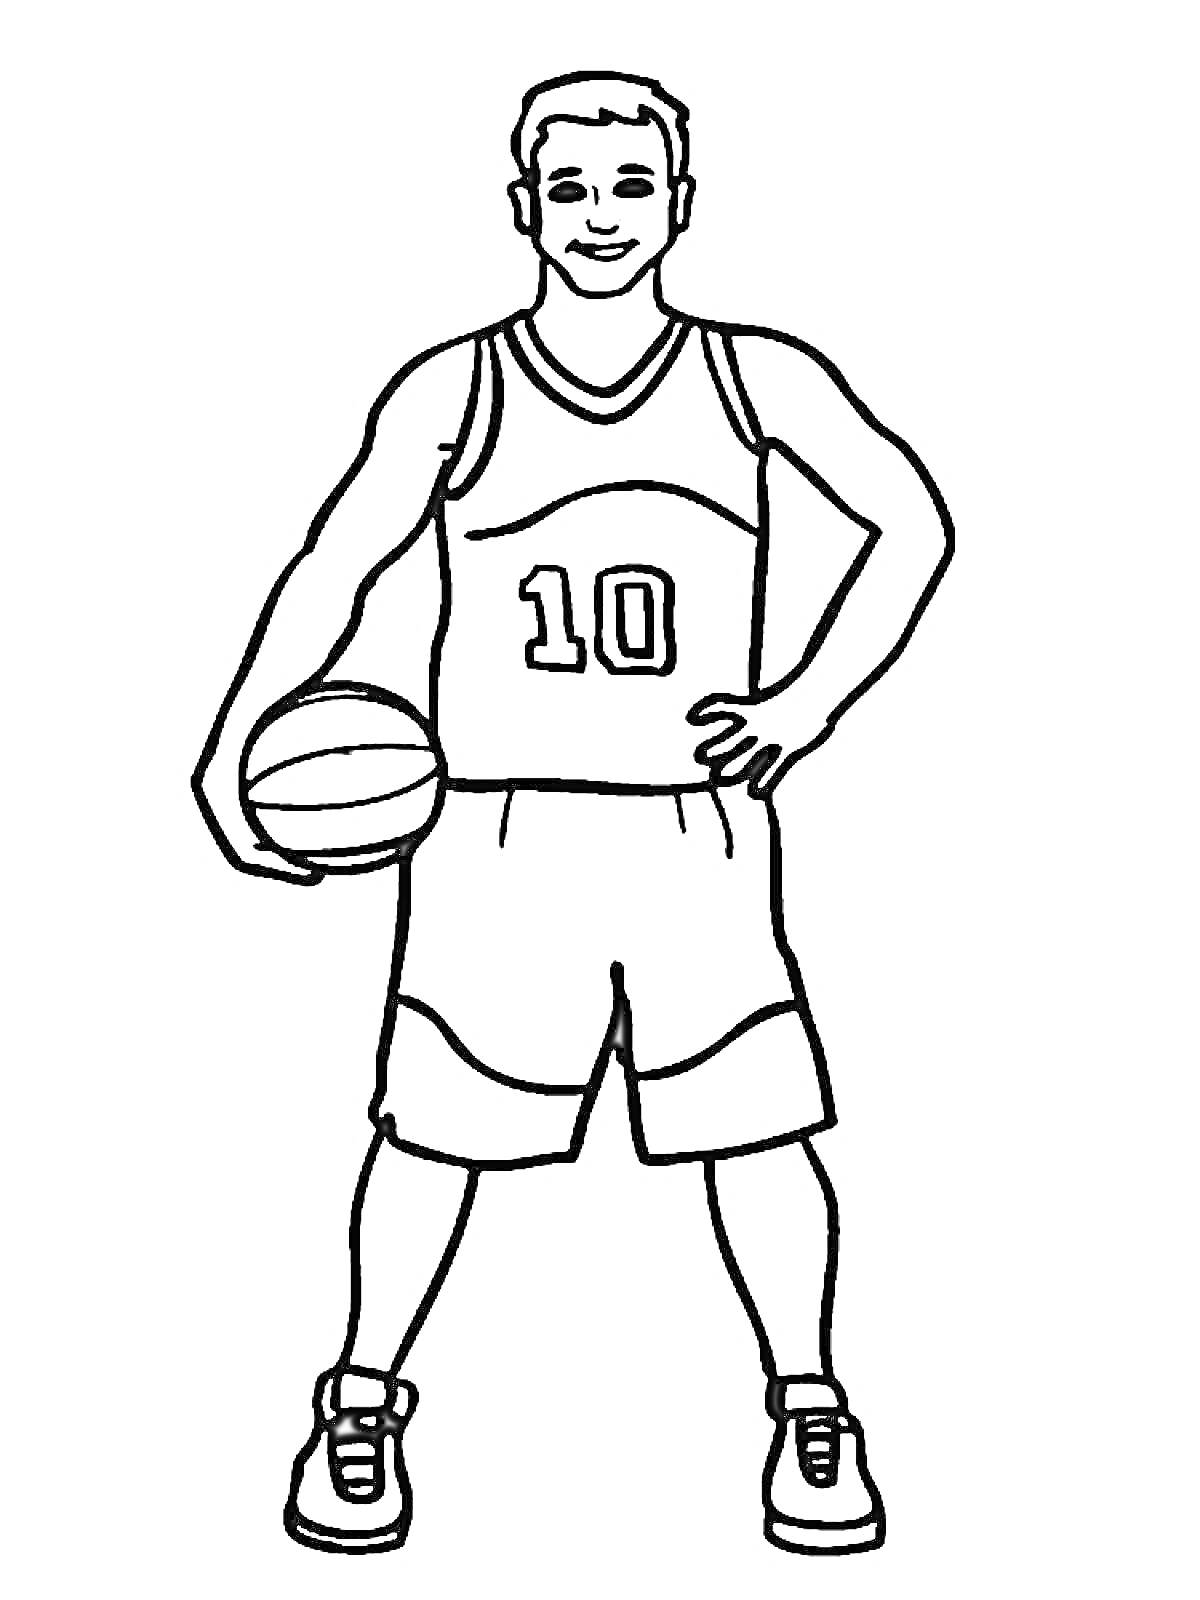 Баскетболист с баскетбольным мячом, в майке с номером 10, в шортах и кроссовках